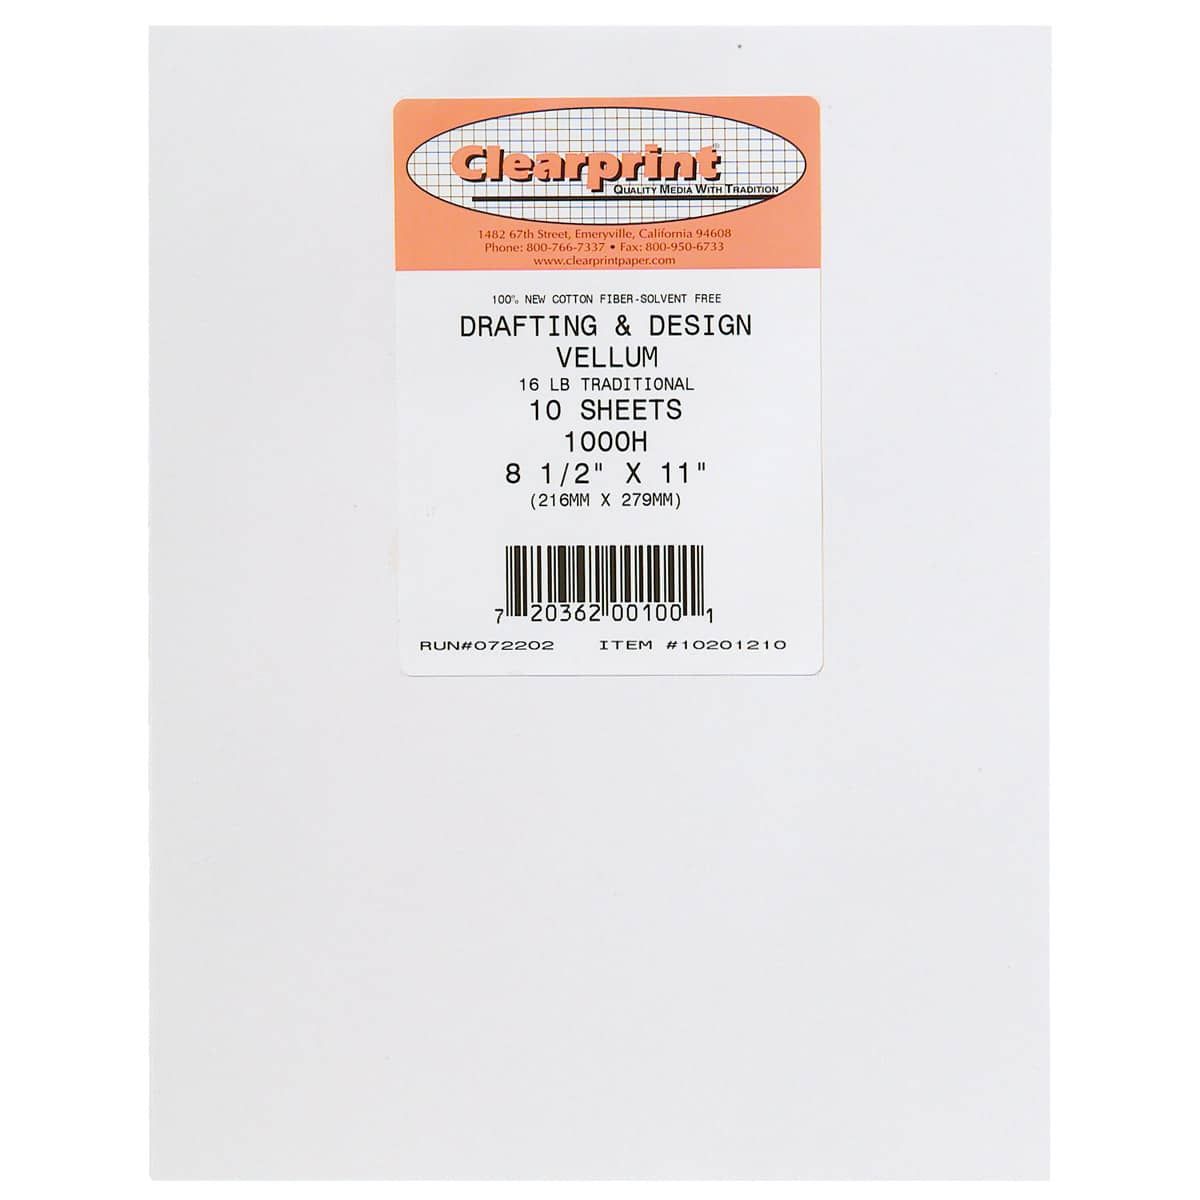 Clearprint 1000H Vellum 10 Sheet Pack Plain 8-1/2